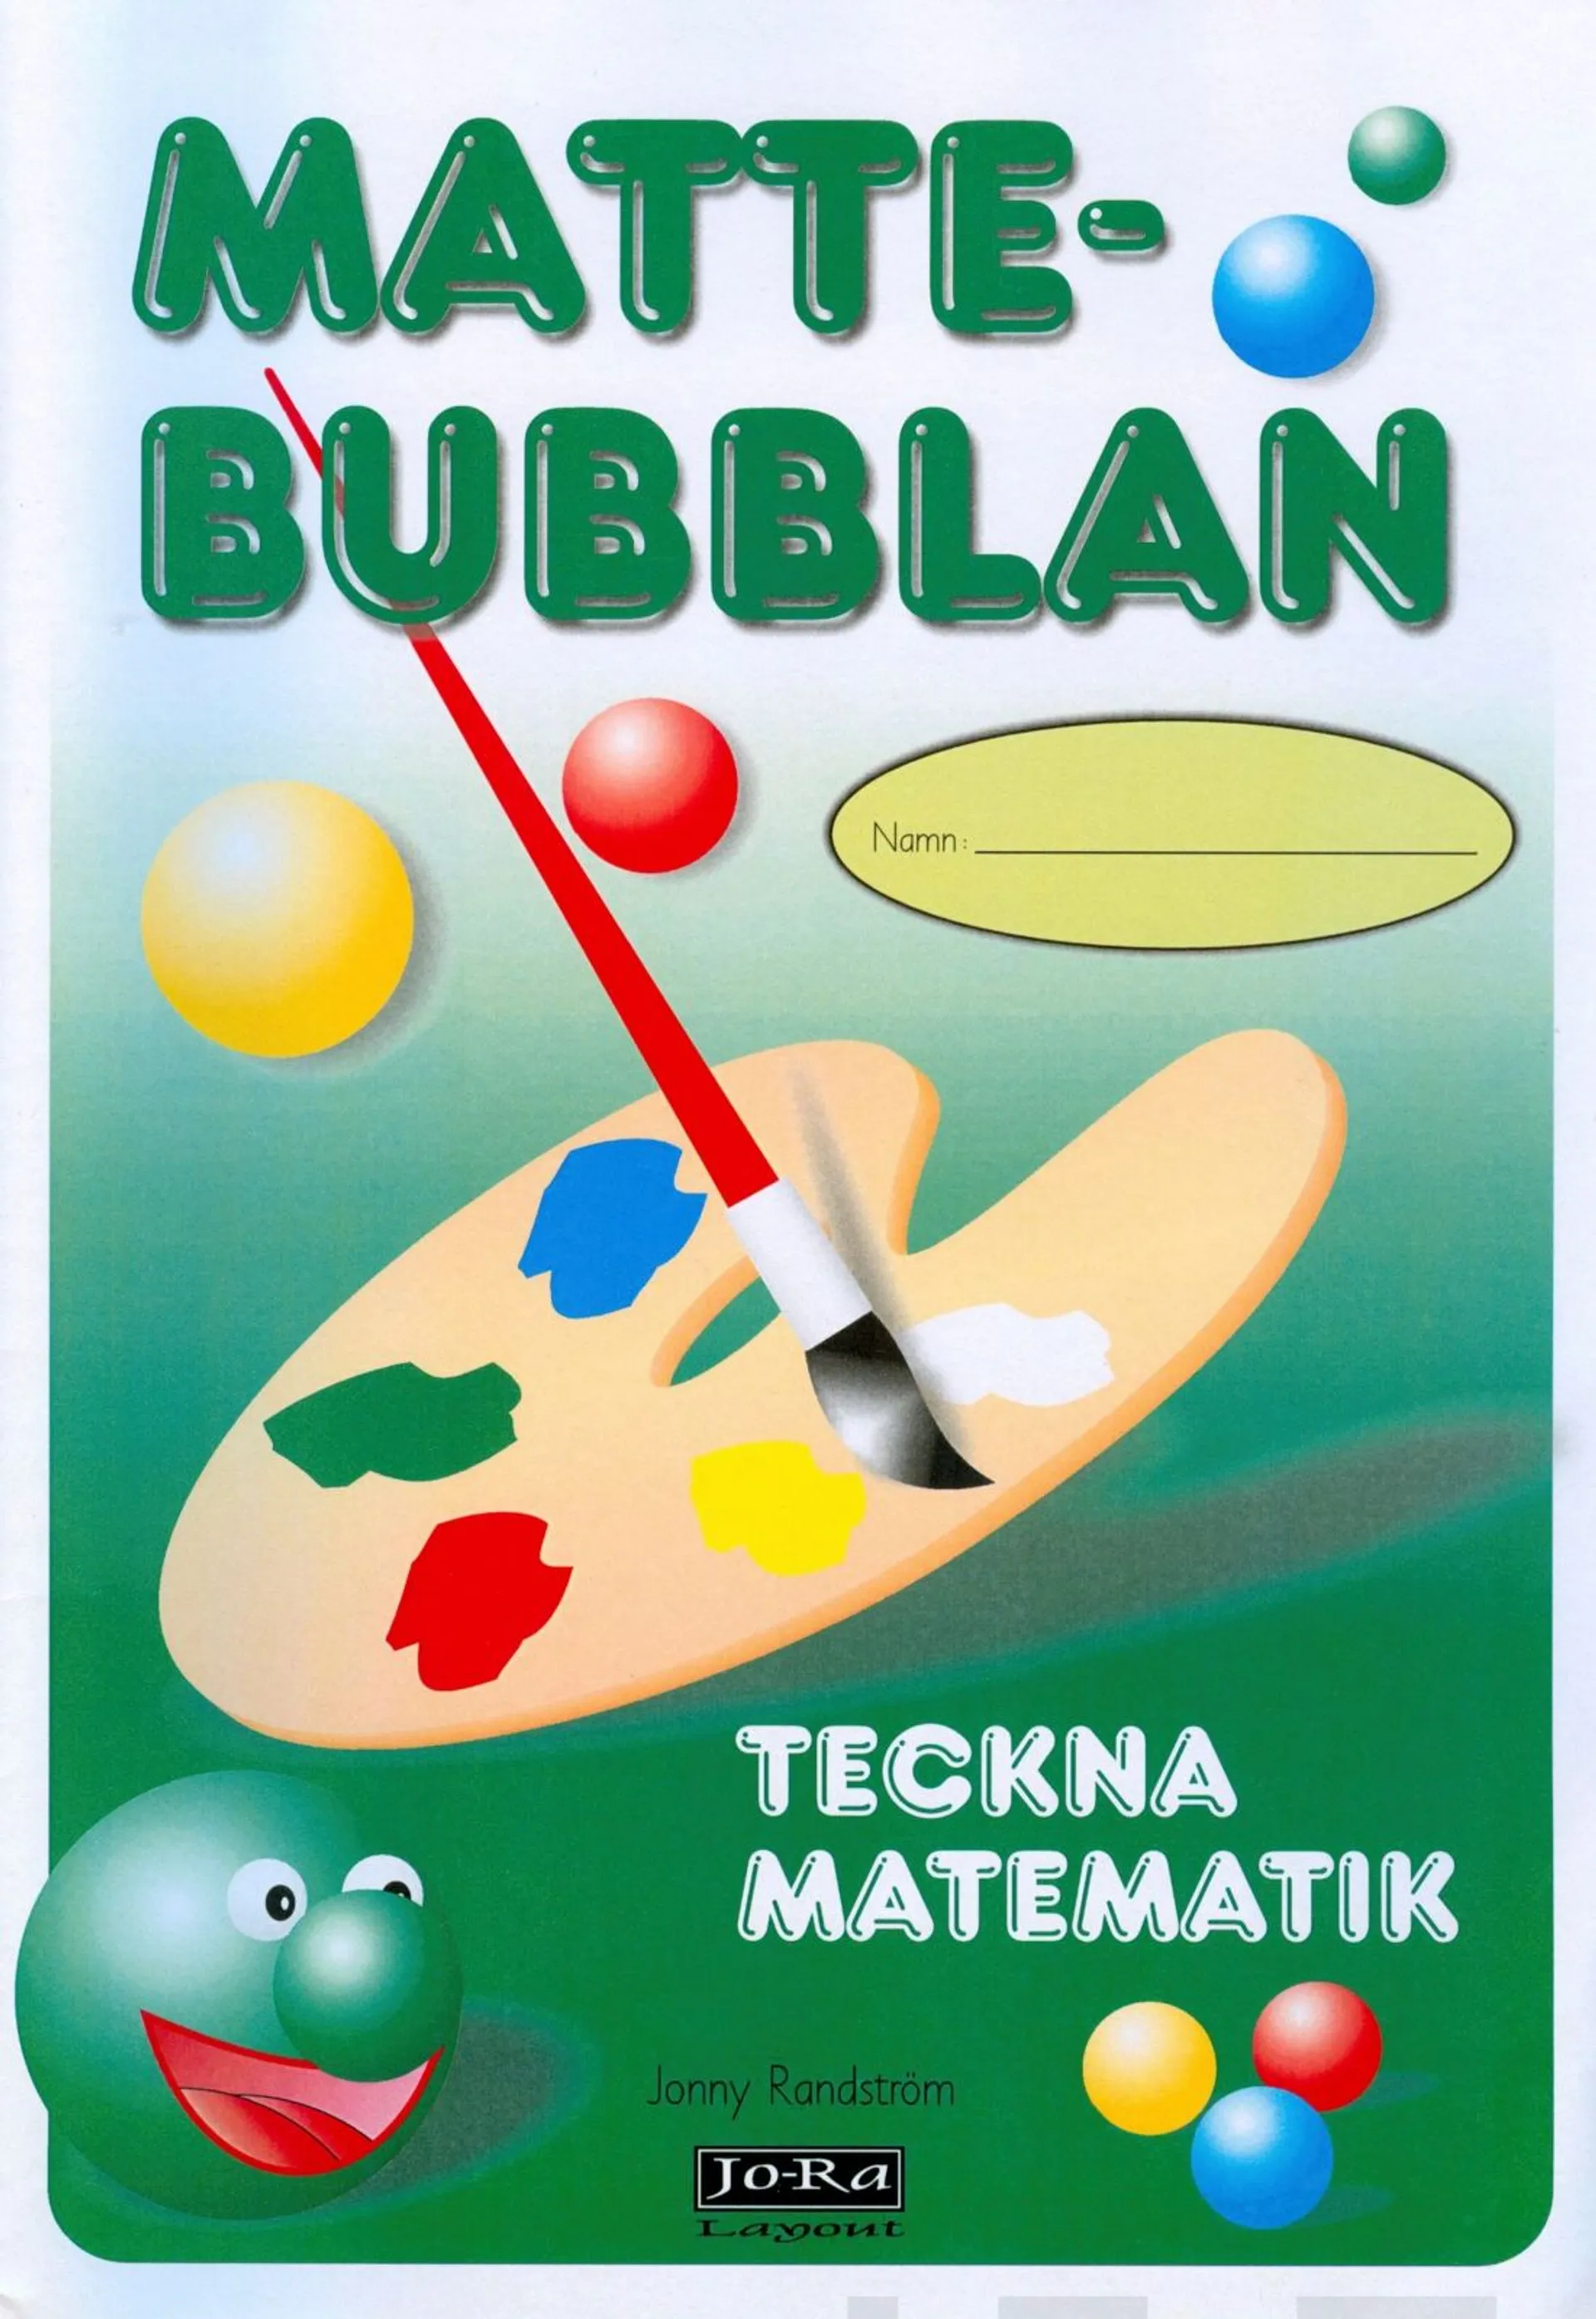 Mattebubblan, teckna matematik